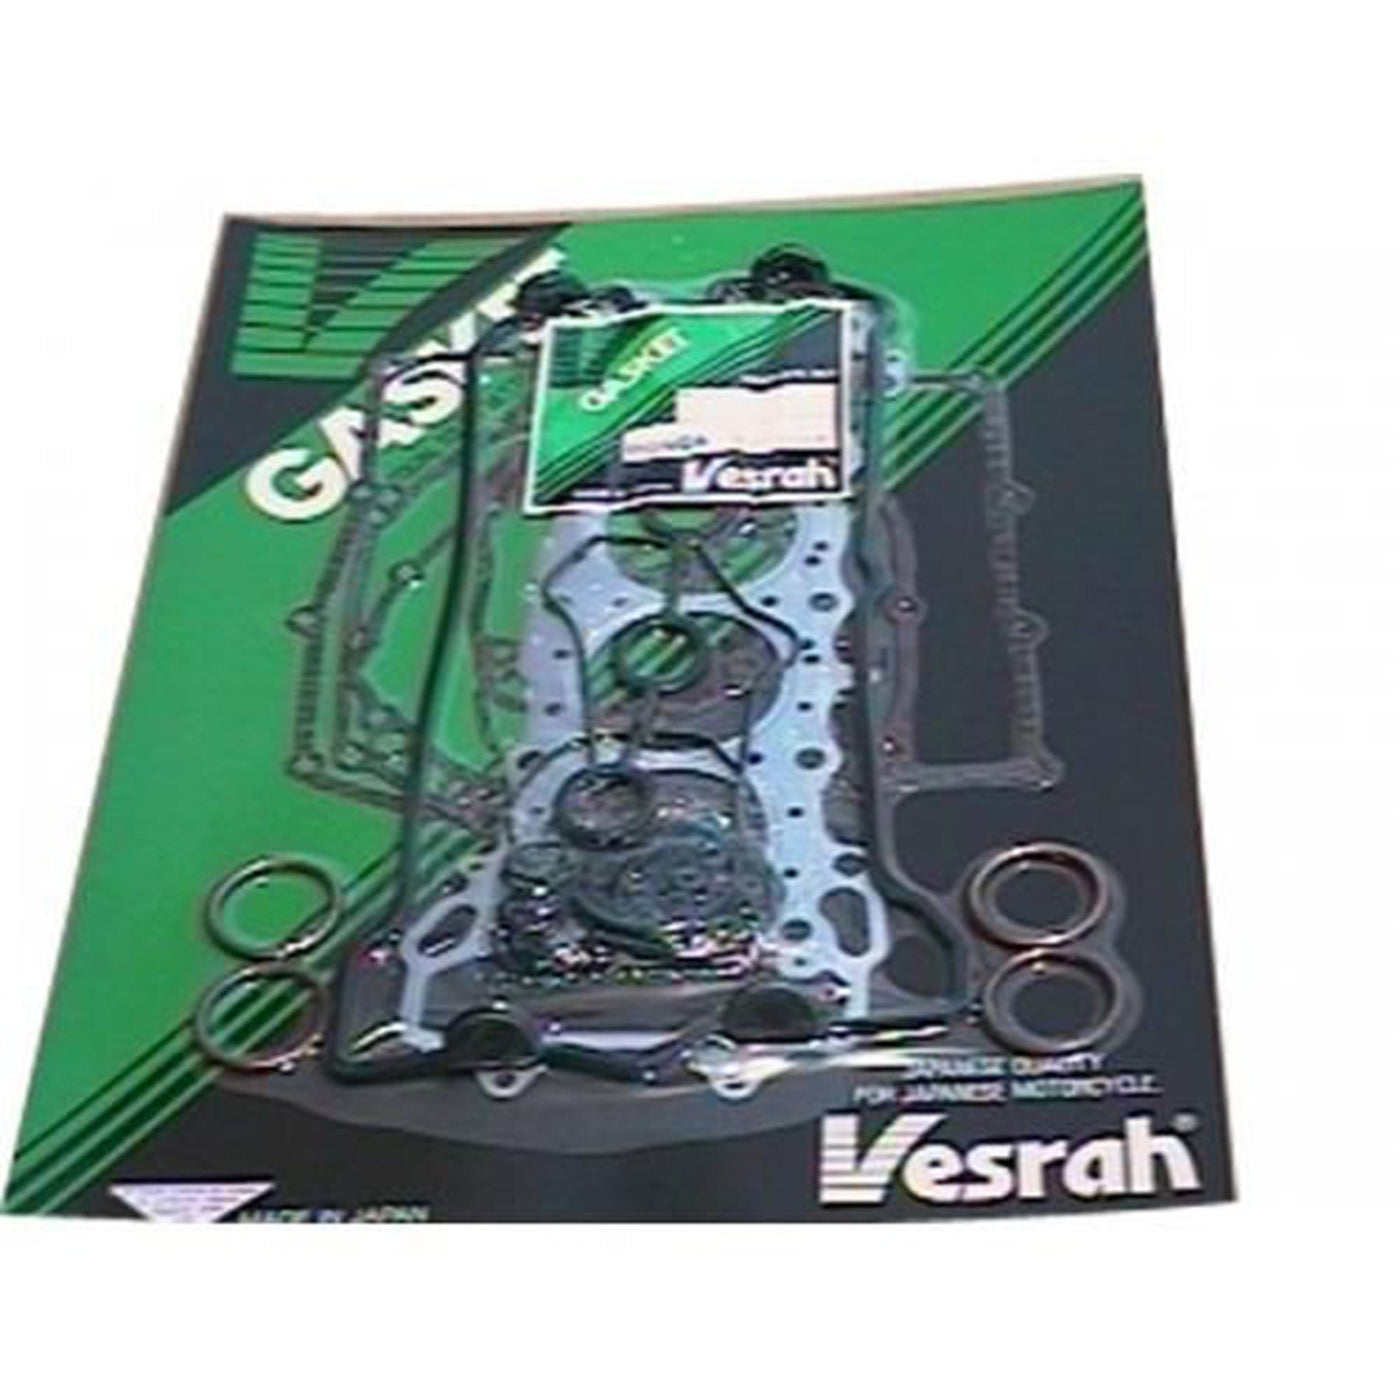 Vesrah VG-1060 Complete Gasket Kit #VG-1060